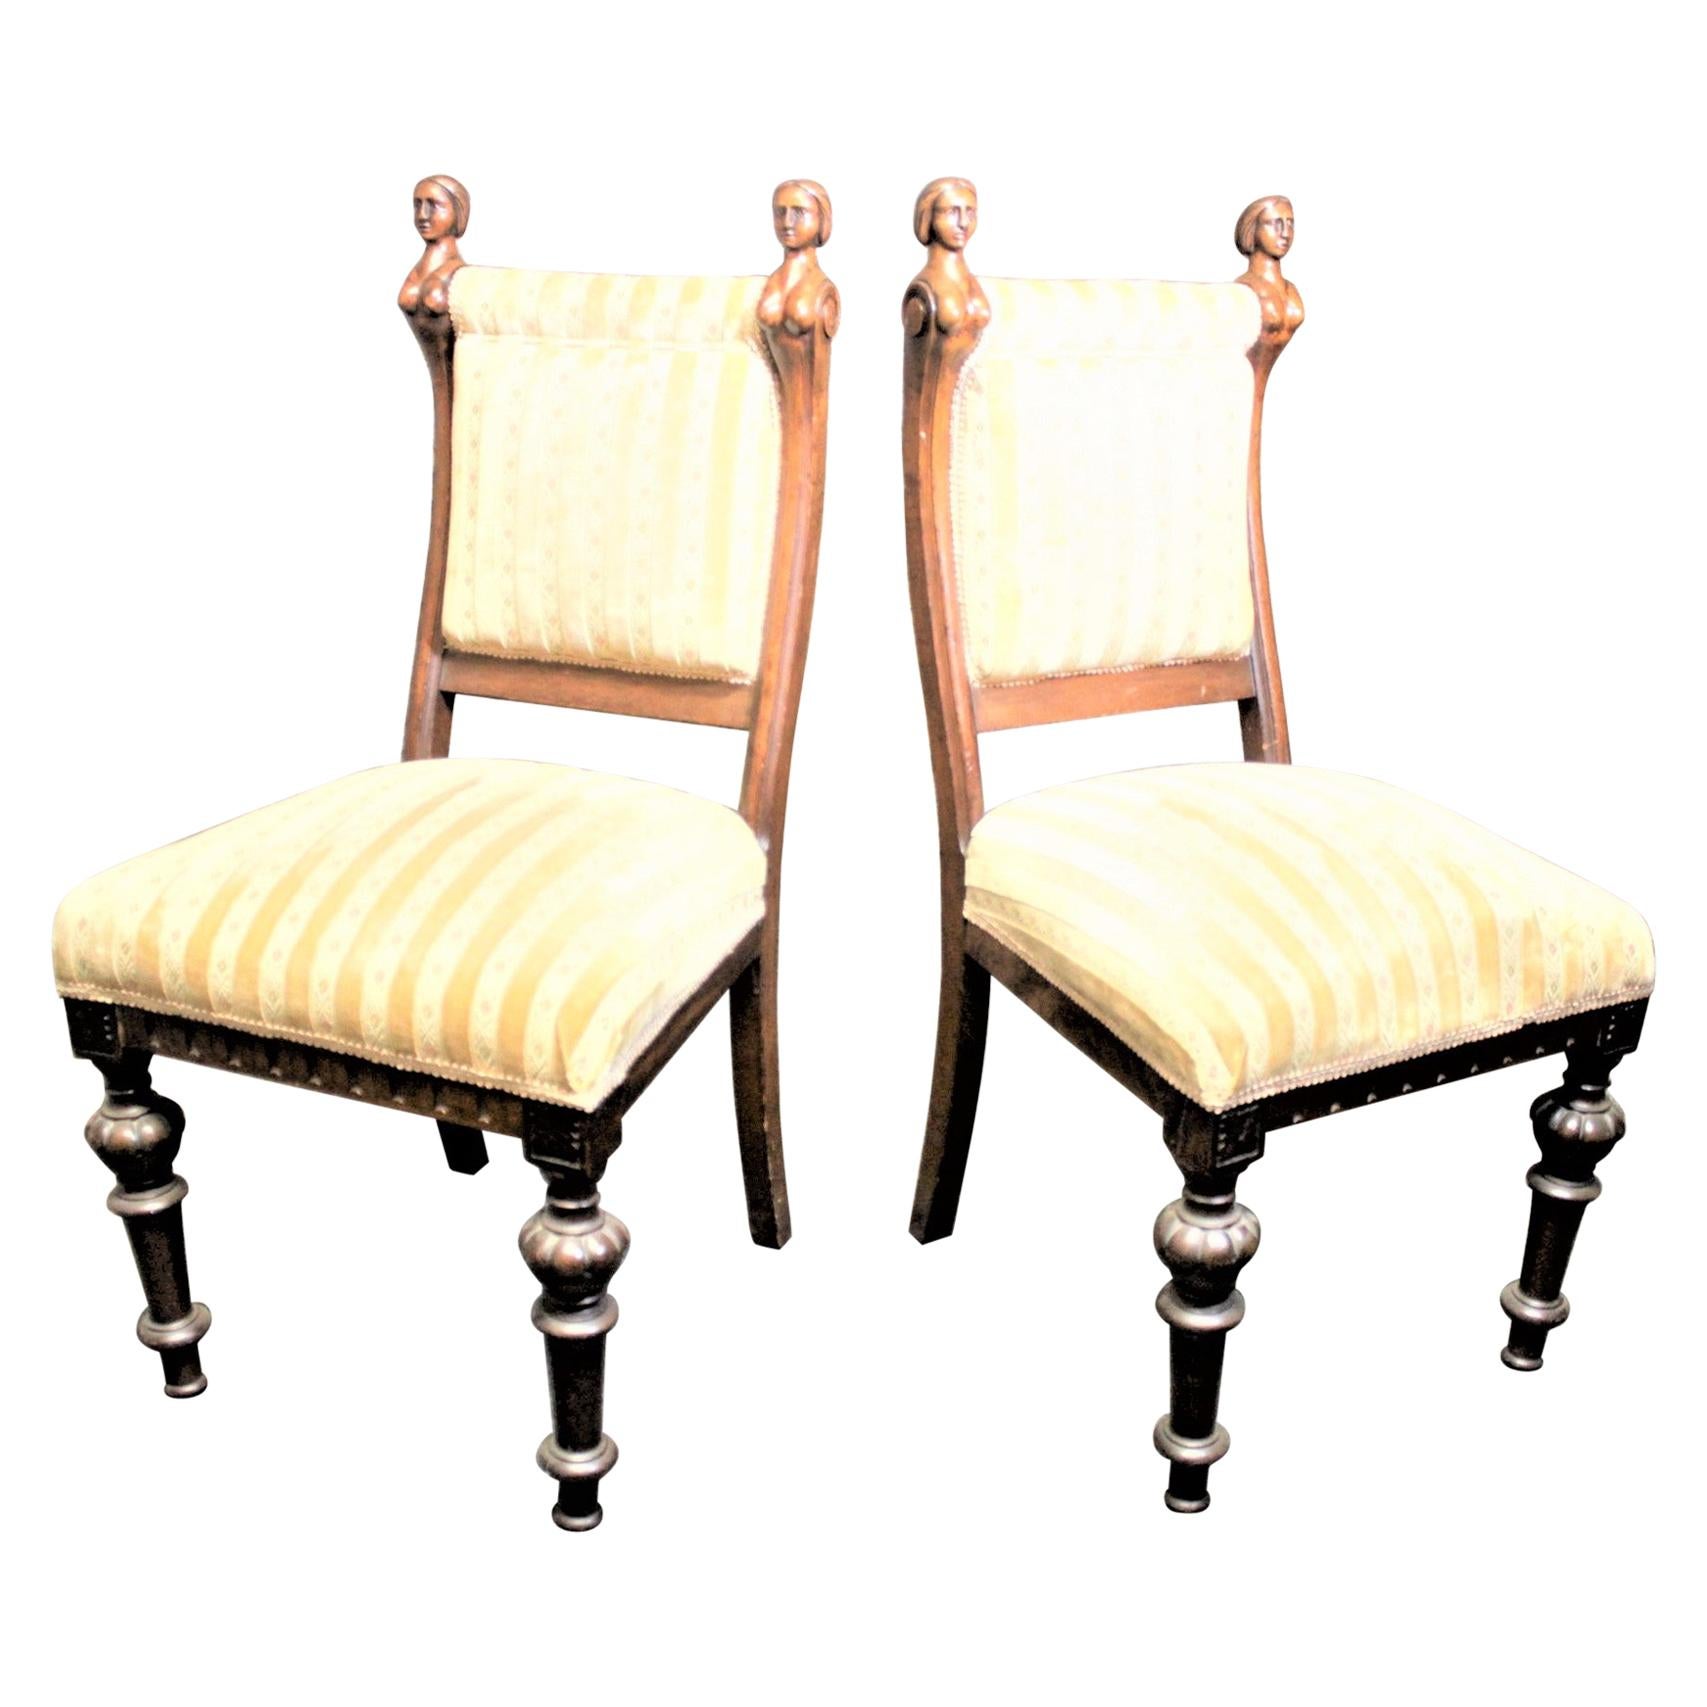 Paar antike amerikanische geschnitzte Salonstühle aus Nussbaumholz mit erotischen weiblichen Akzenten